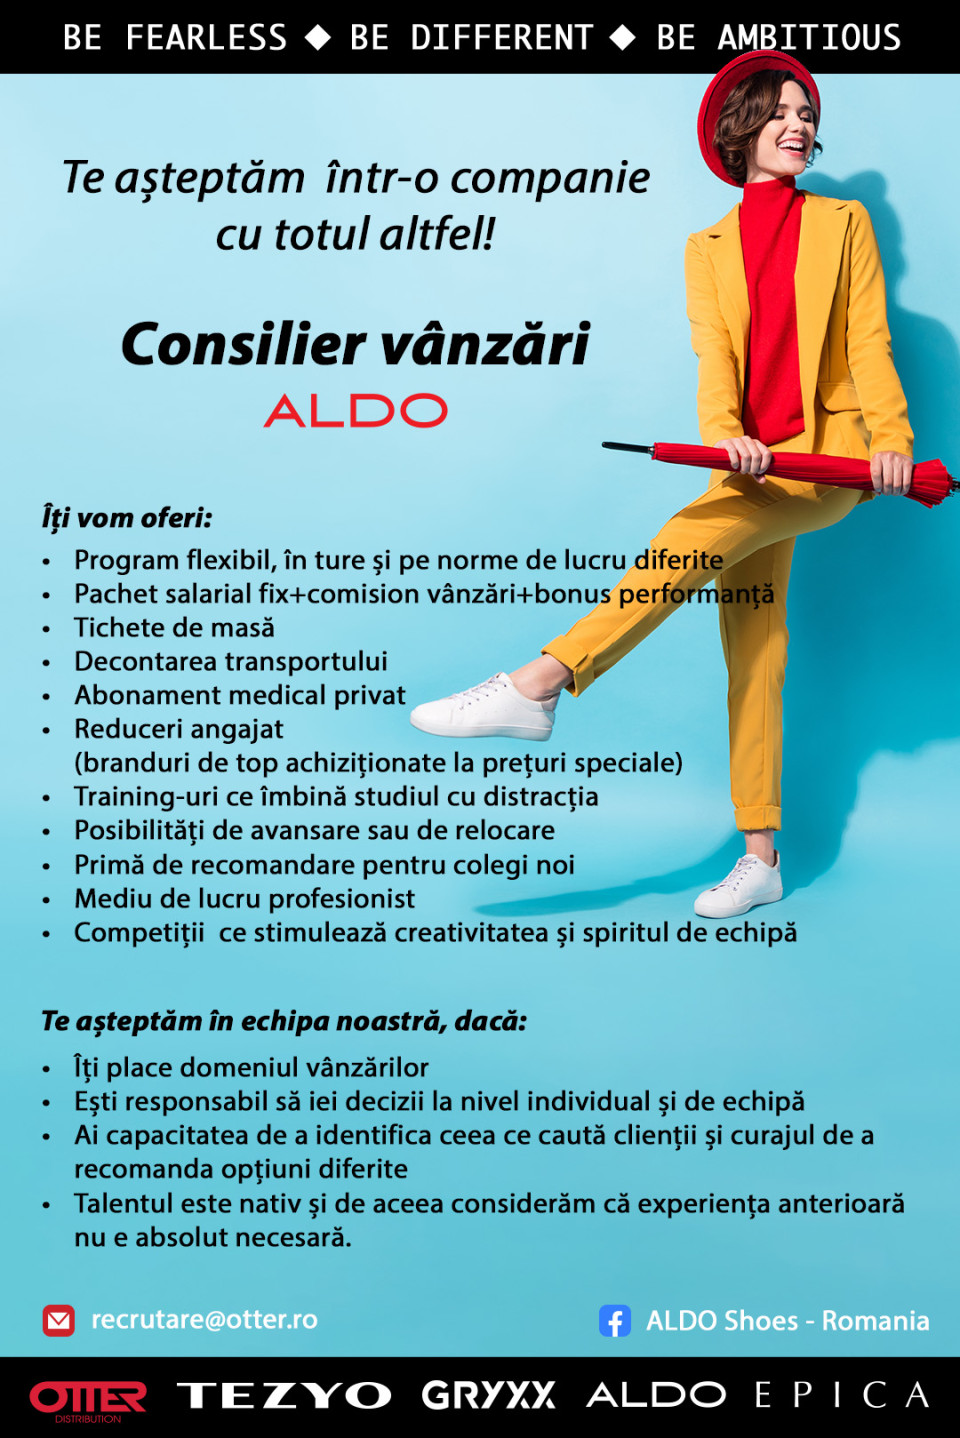 Consilier vanzari ALDO C-ta Vivo venit net: 3100 - 3600 ron